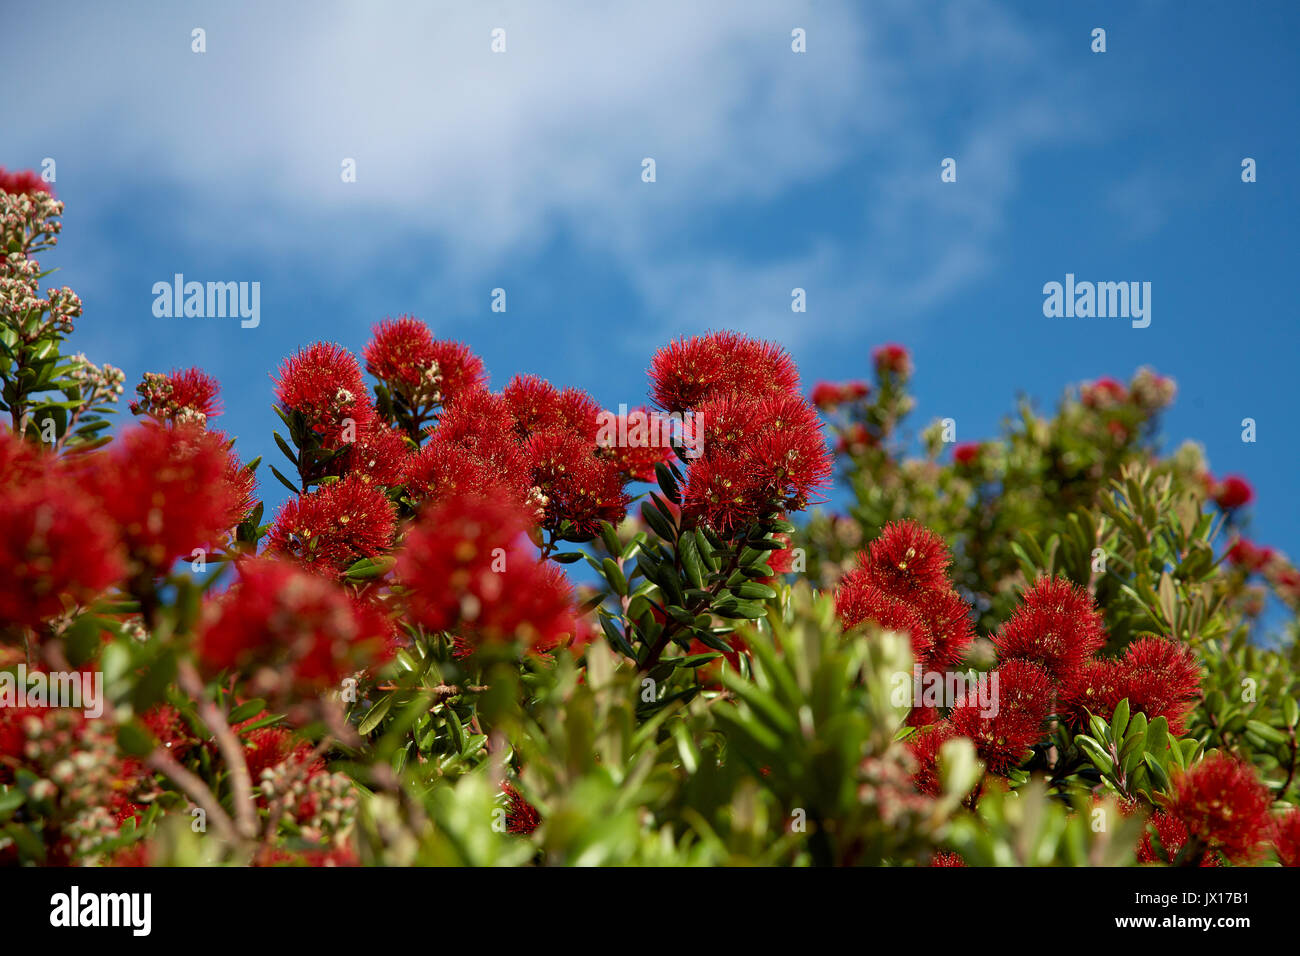 Pohutukawa tree bright red flowers Stock Photo